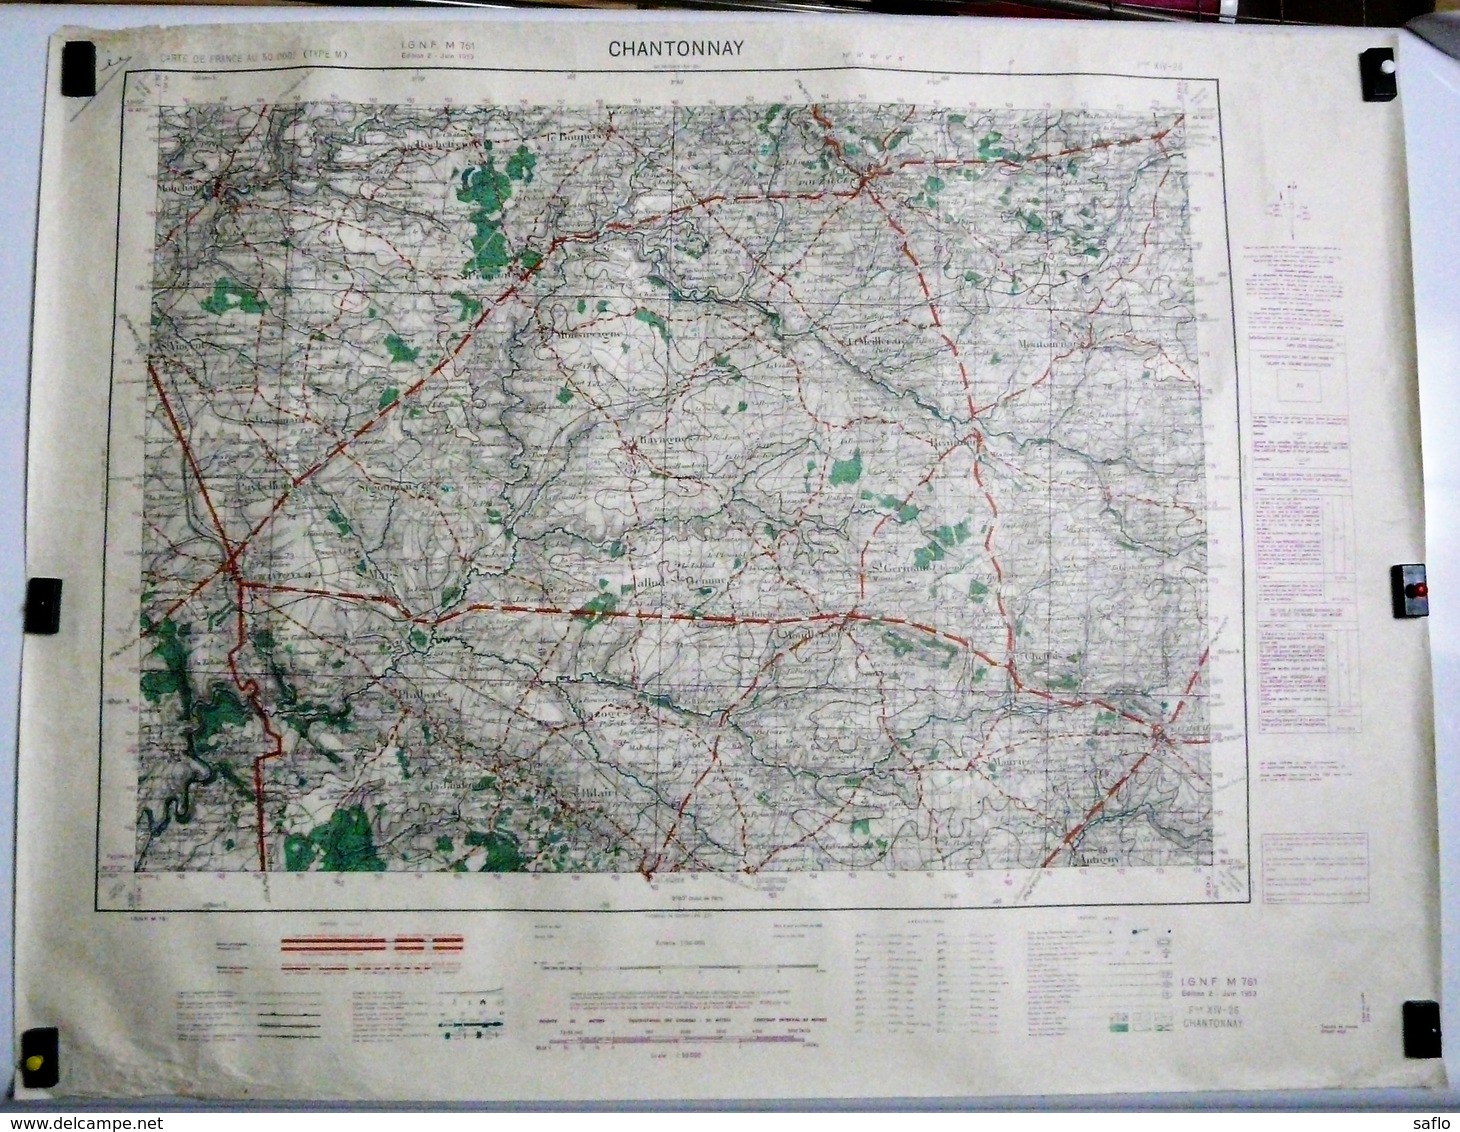 Carte Etat Major Chantonnay (Vendée) Type M - 1/50000ème Feuille XIV - 26  Institut Géographique National (IGNF) 1953 - Cartes Topographiques